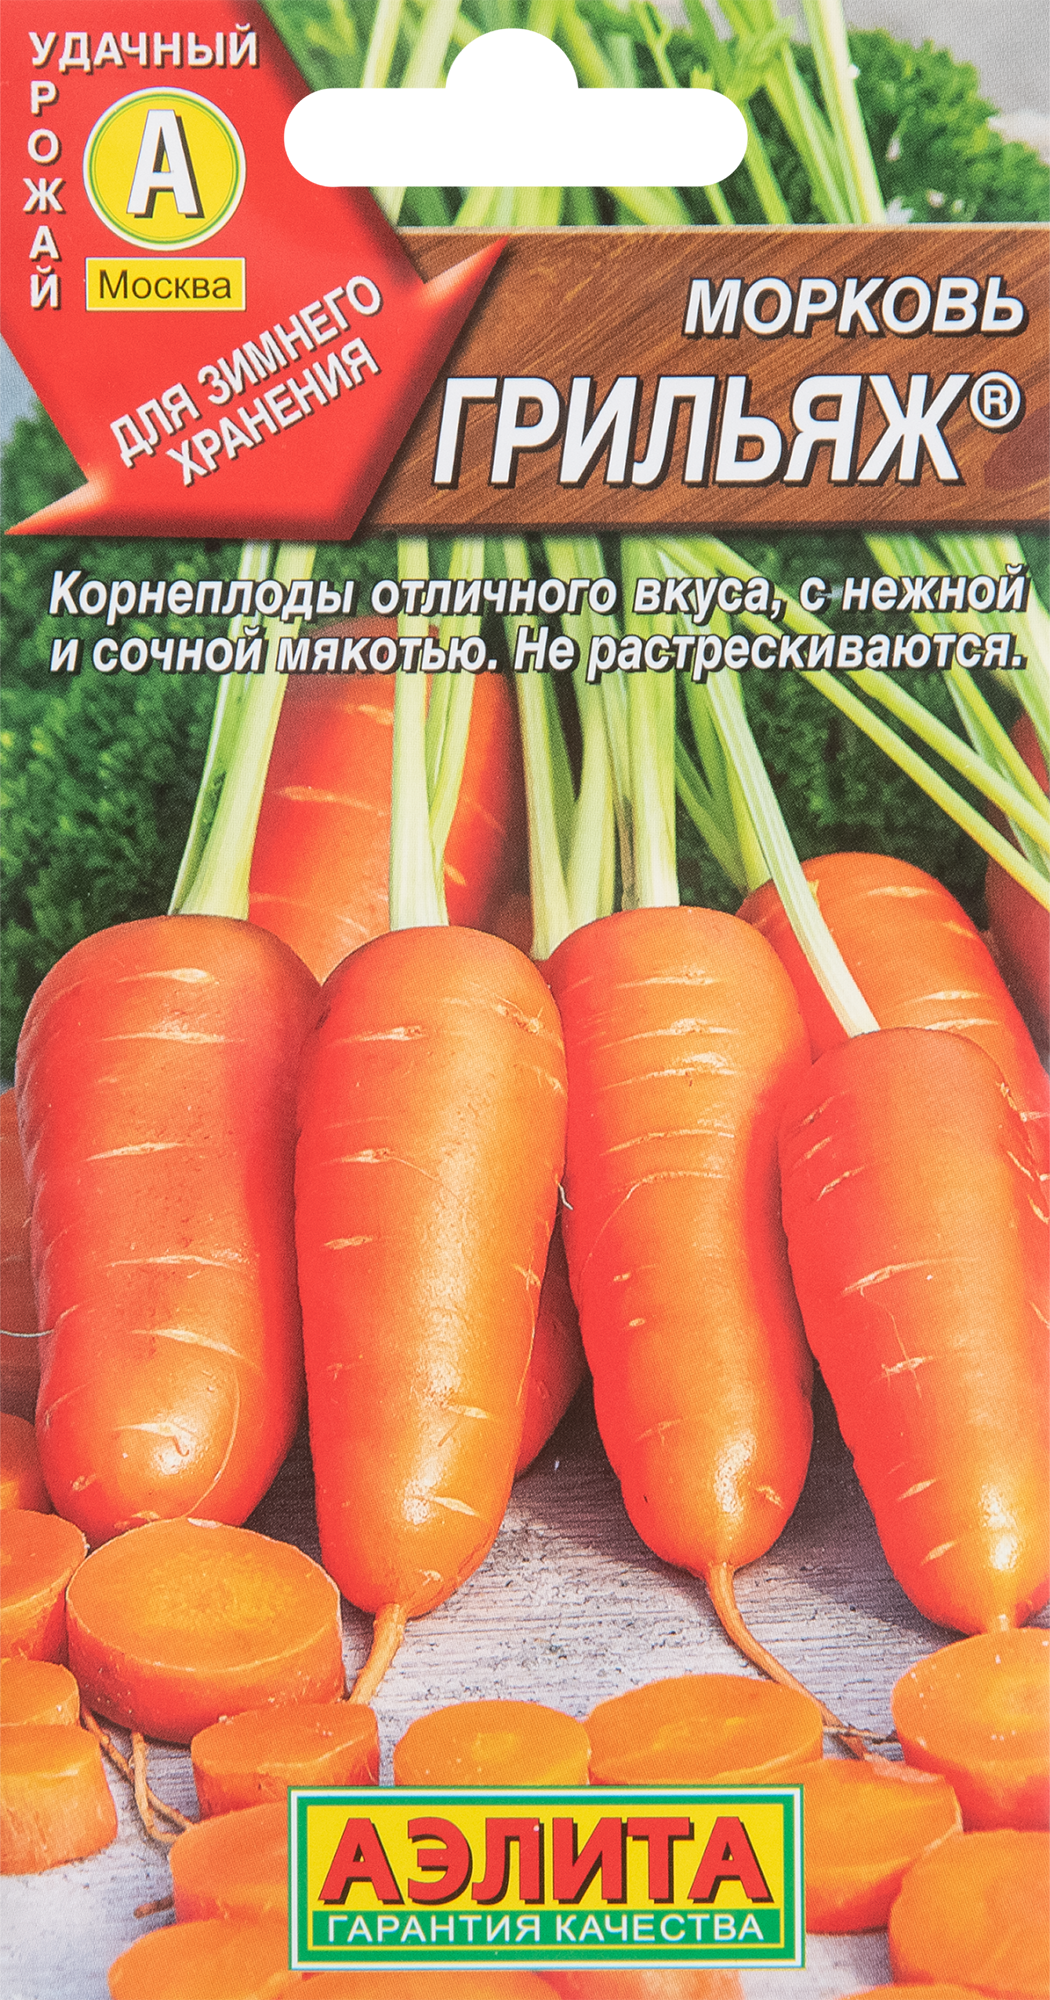 Урожайность и сроки созревания моркови Ромоса